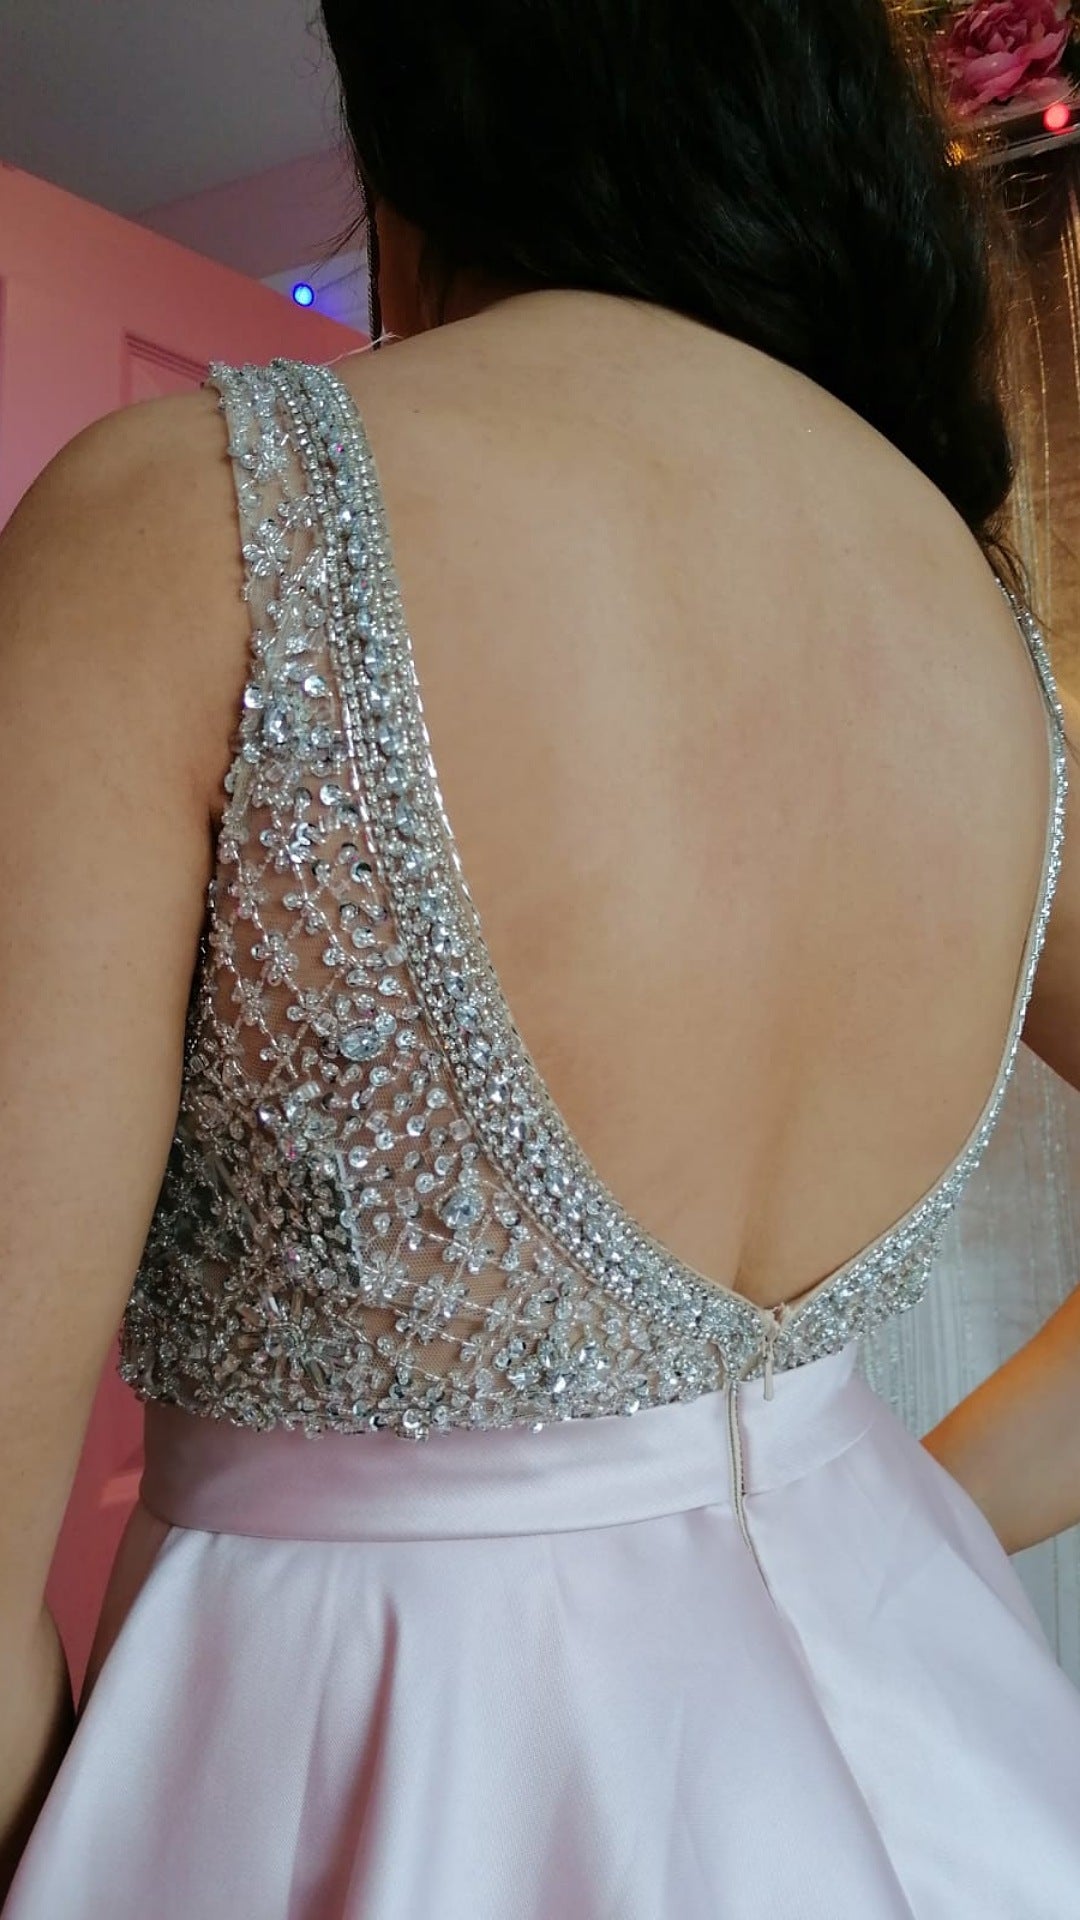 Charlotte Blush Pink Embellished Plunge Neck Silk Ballgown Formal Prom Dress